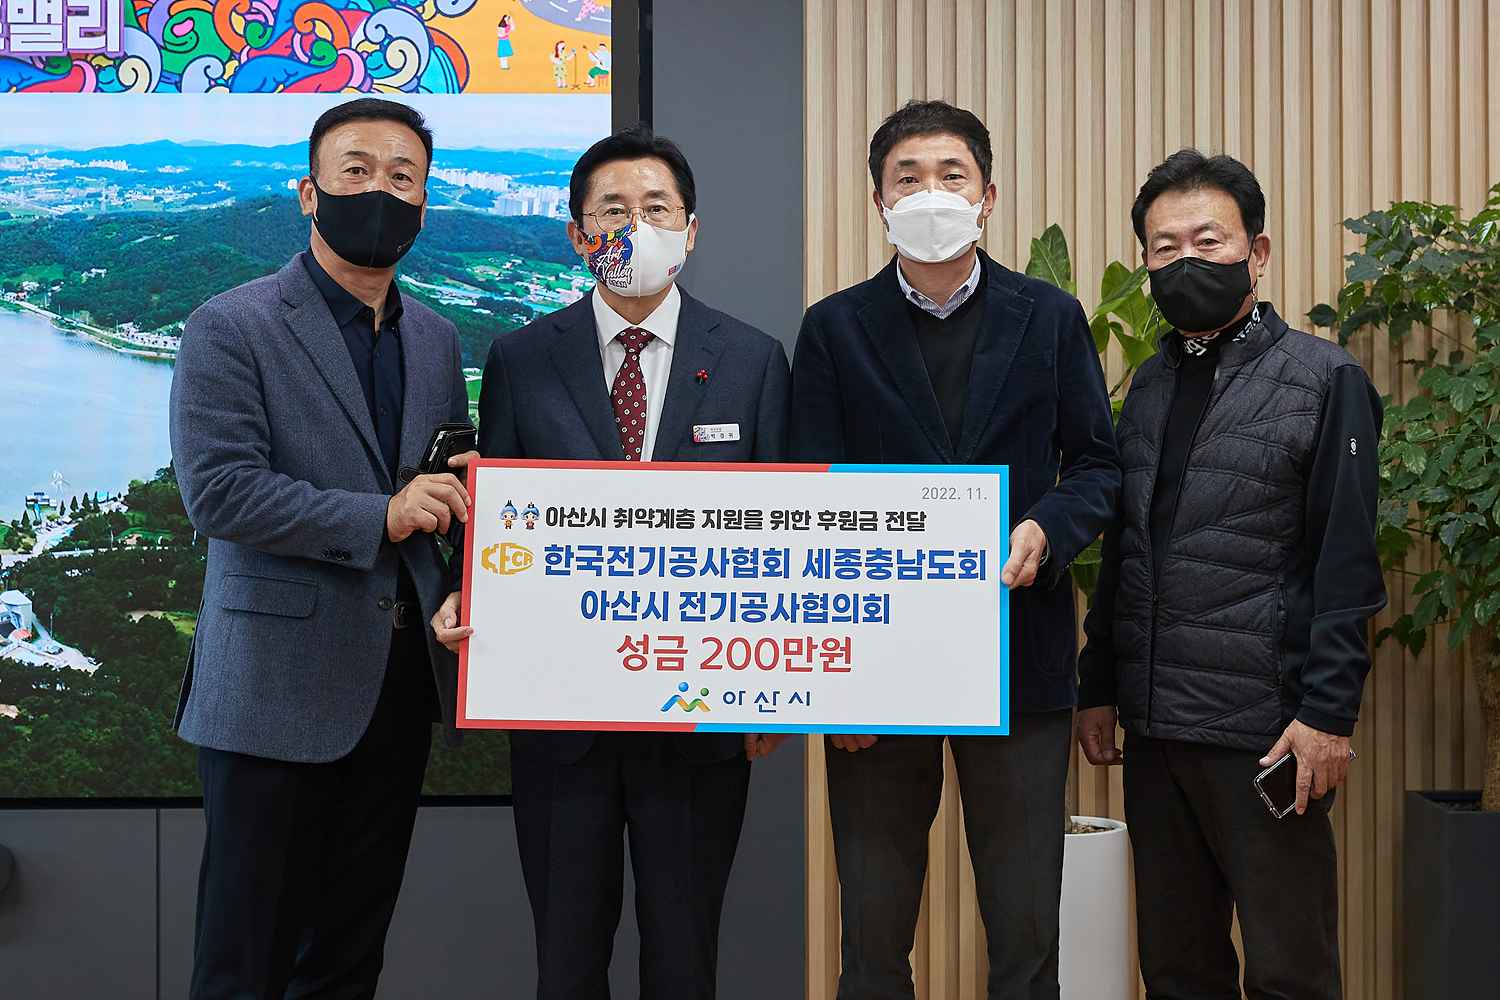 2022.11.09.한국전기공사협회 아산시협의회, 취약계층 지원 성금 200만원 전달